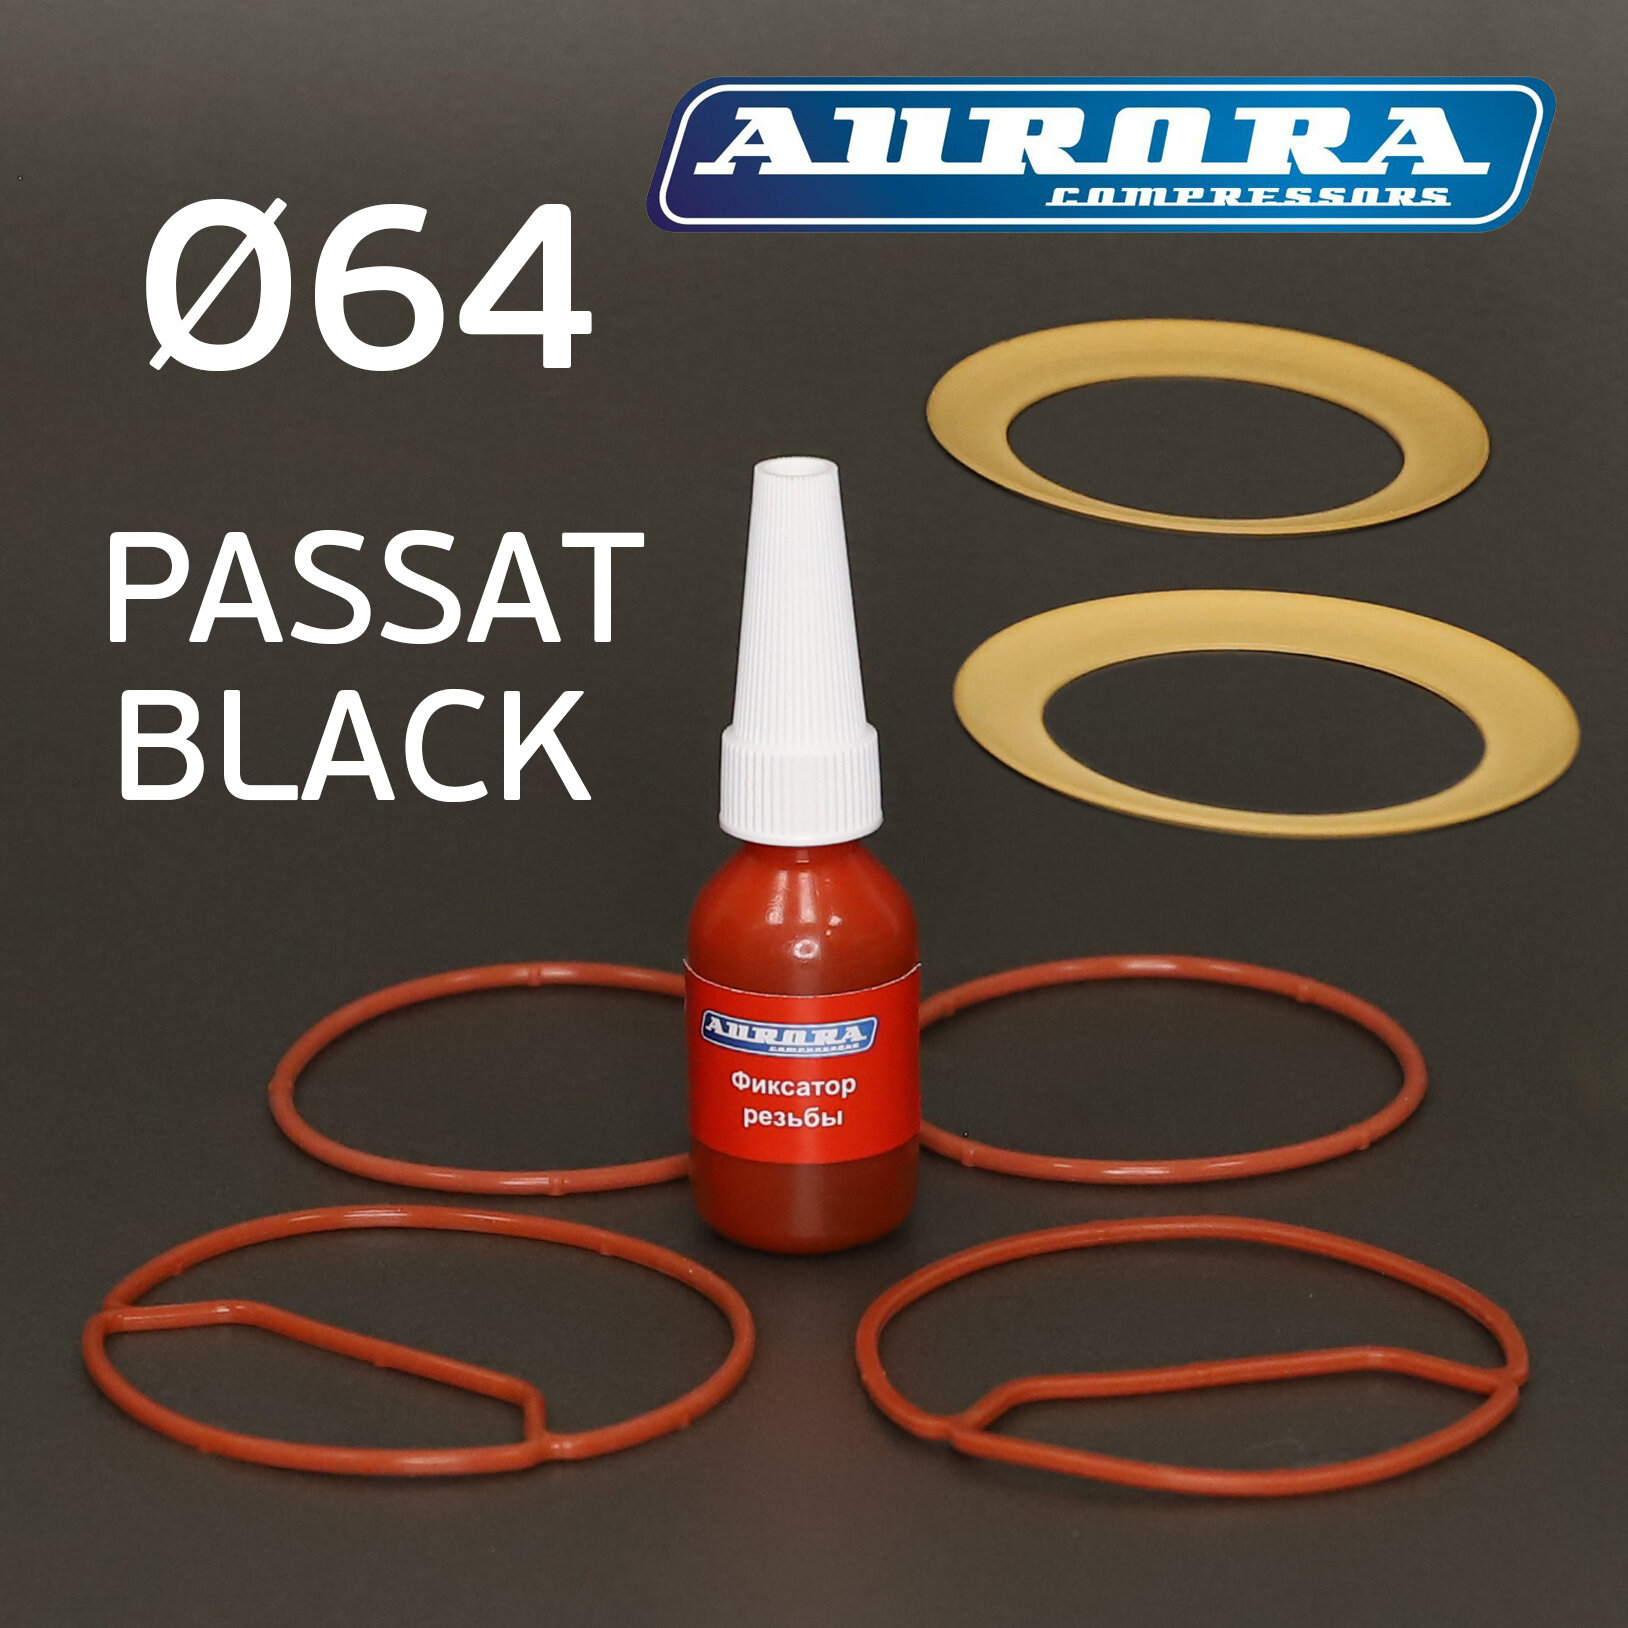 Ремкомплект компрессора PASSAT BLACK 64мм (для моделей 2550100150250) Aurora поршневой группы